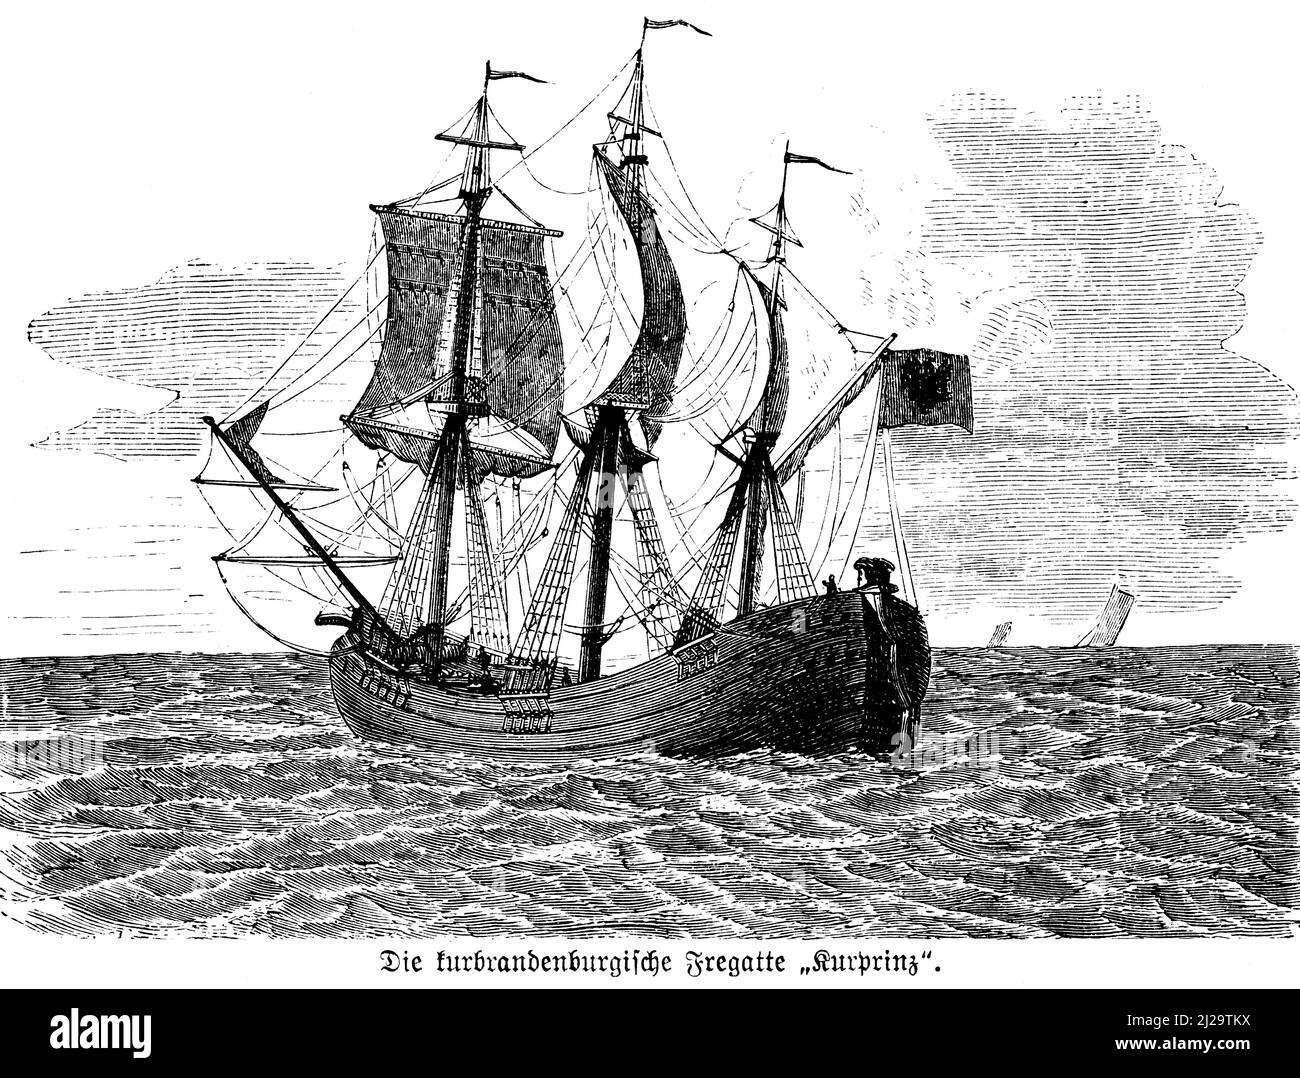 Frégate, Prince électeur, Brandebourg, haute mer, voilier, drapeau, mâts, vagues, horizon, illustration historique 1885 Banque D'Images